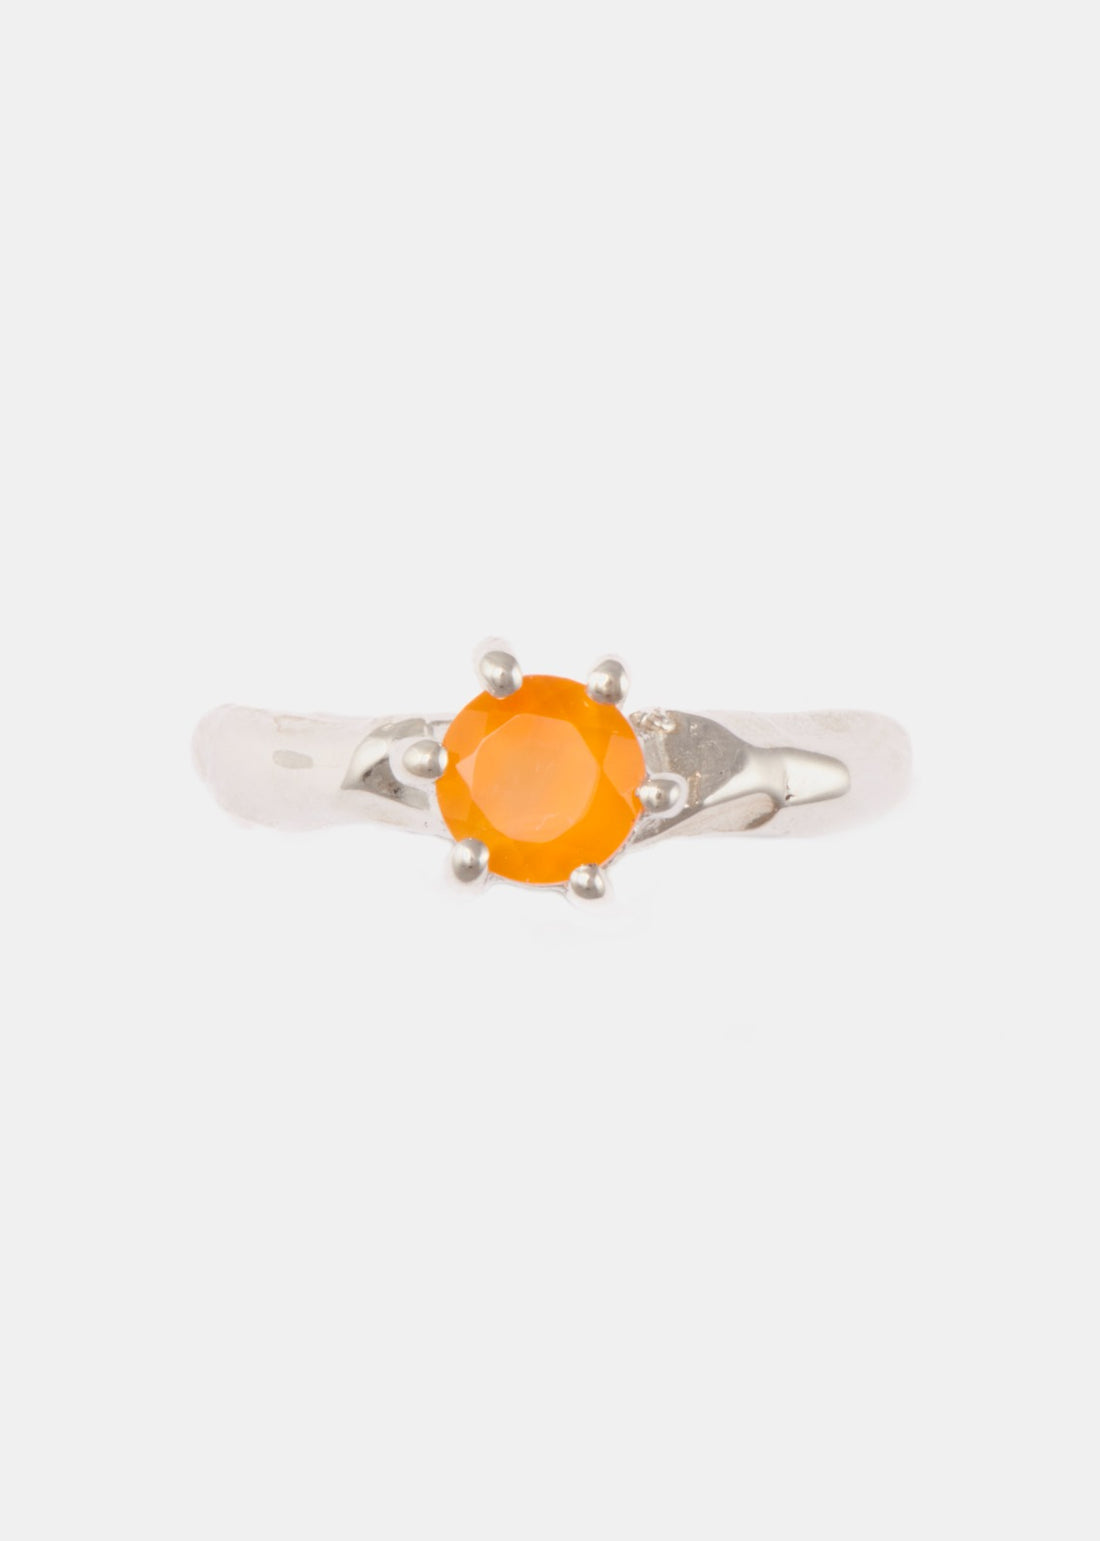 Orange Love Letter ring